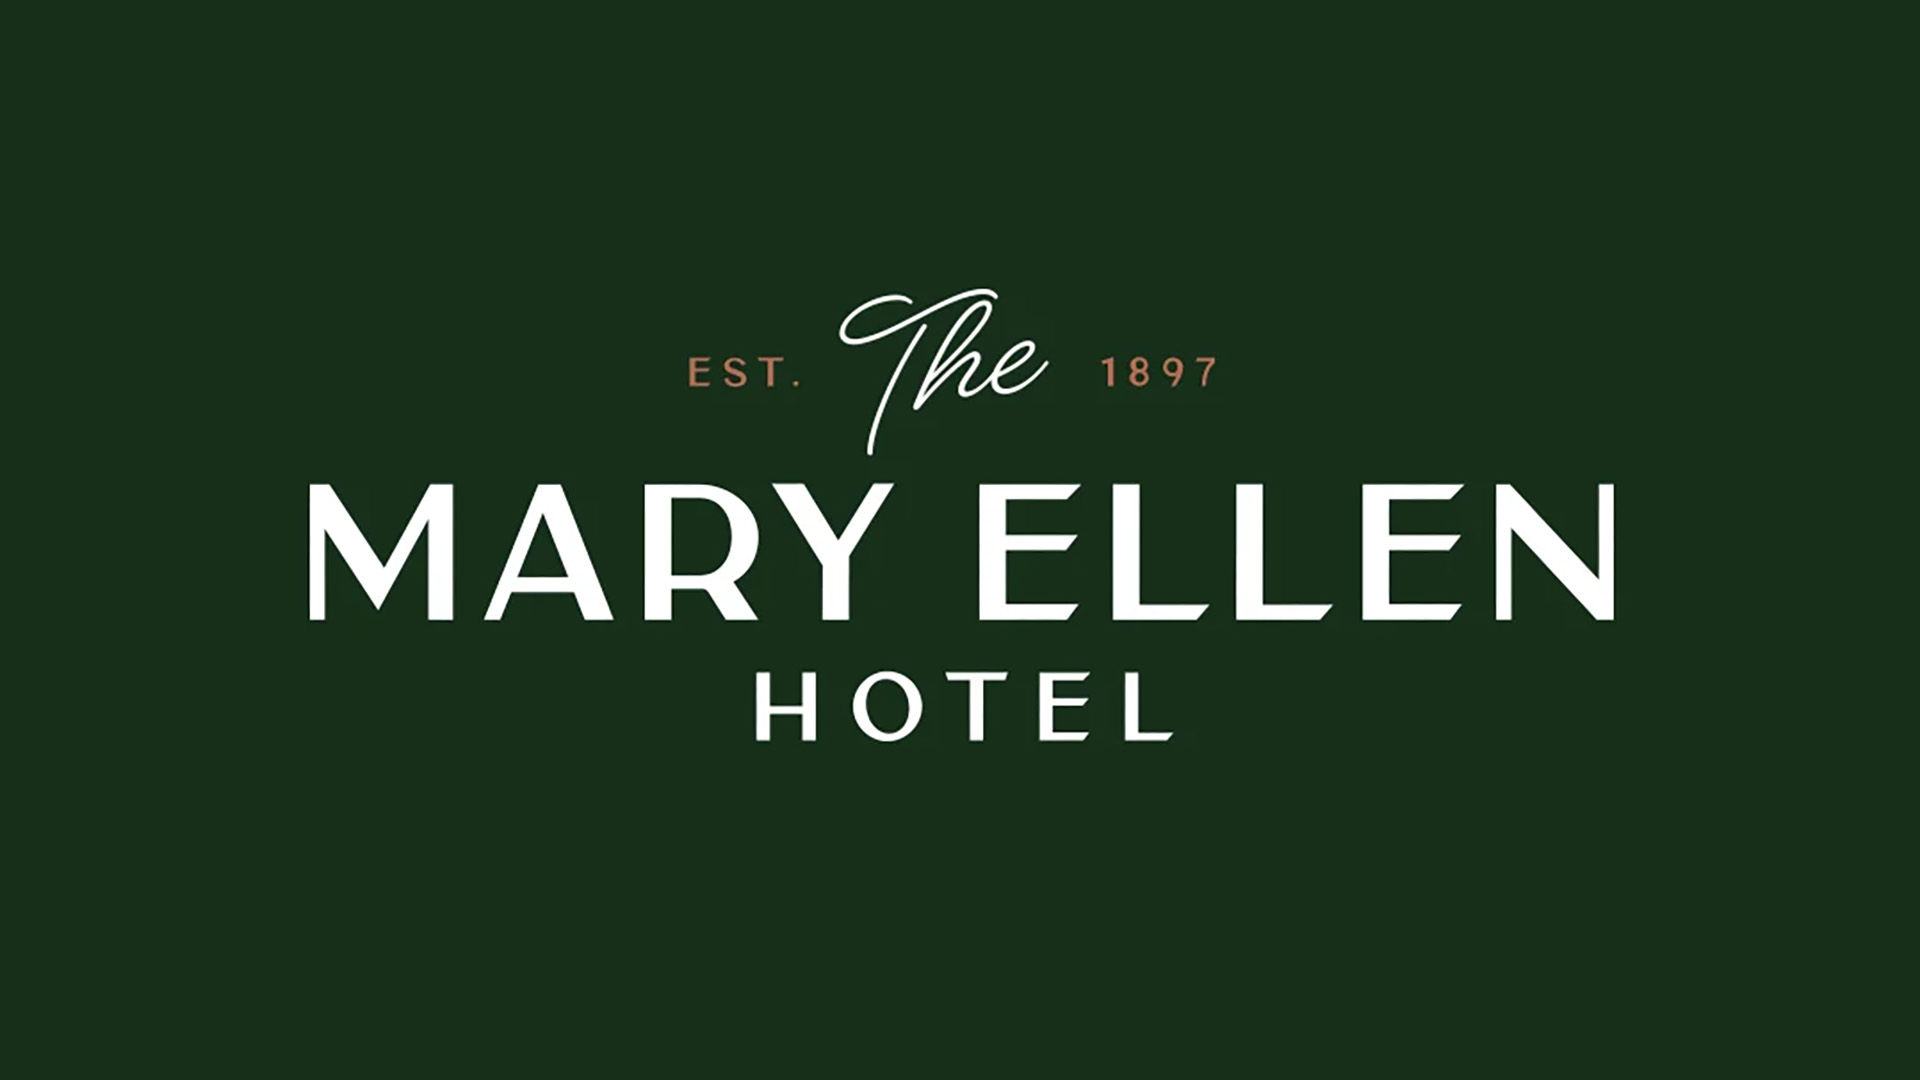 DISTIL_Mary_Ellen_Hotel_Rebrand_Case_Study_Logos_Still-2